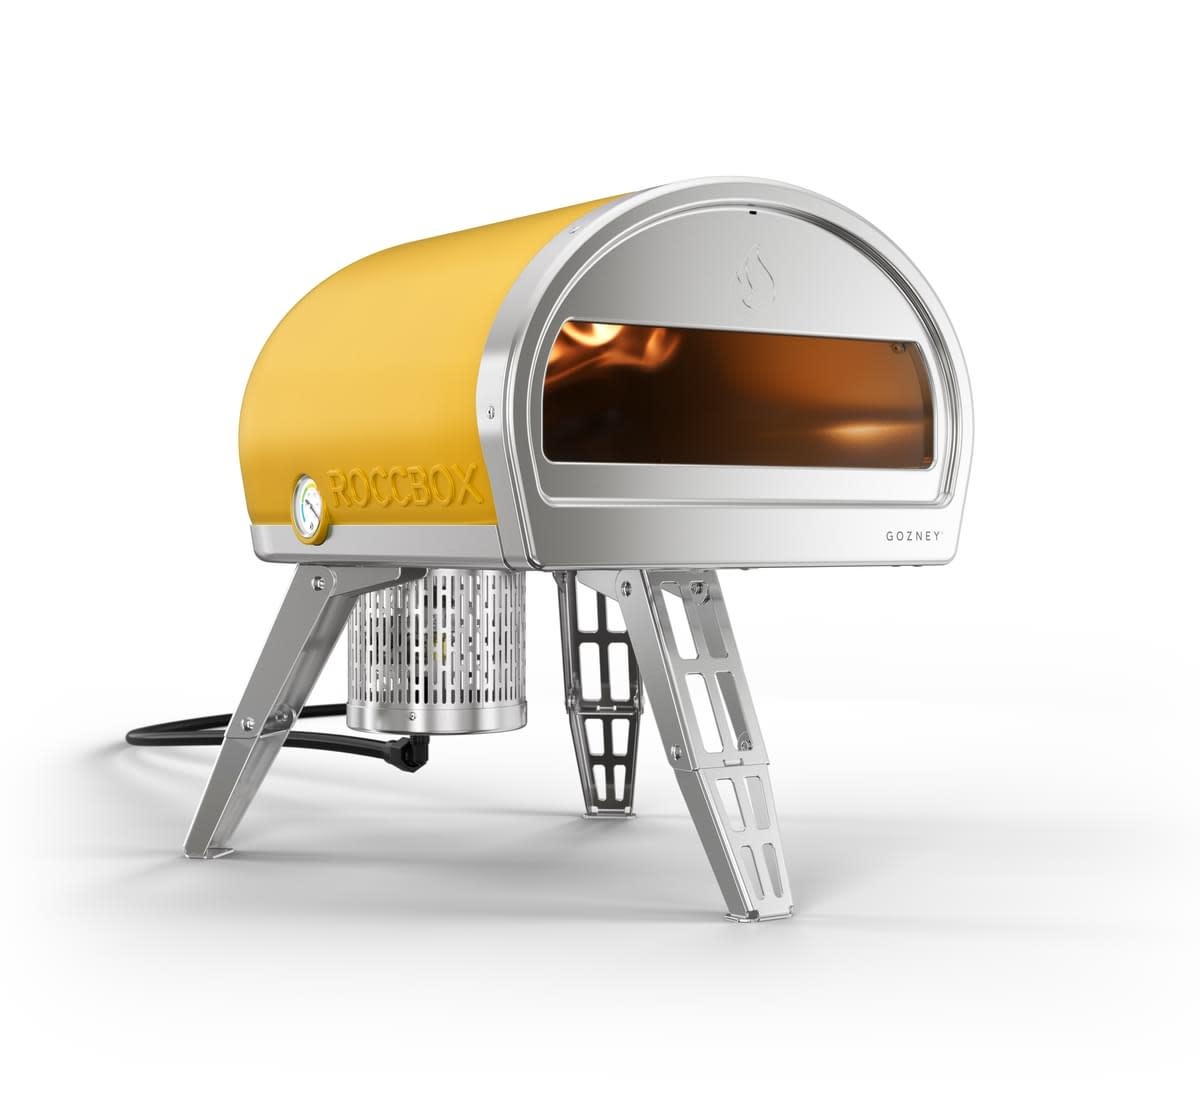 Gozney Roccbox Pizza Oven Yellow